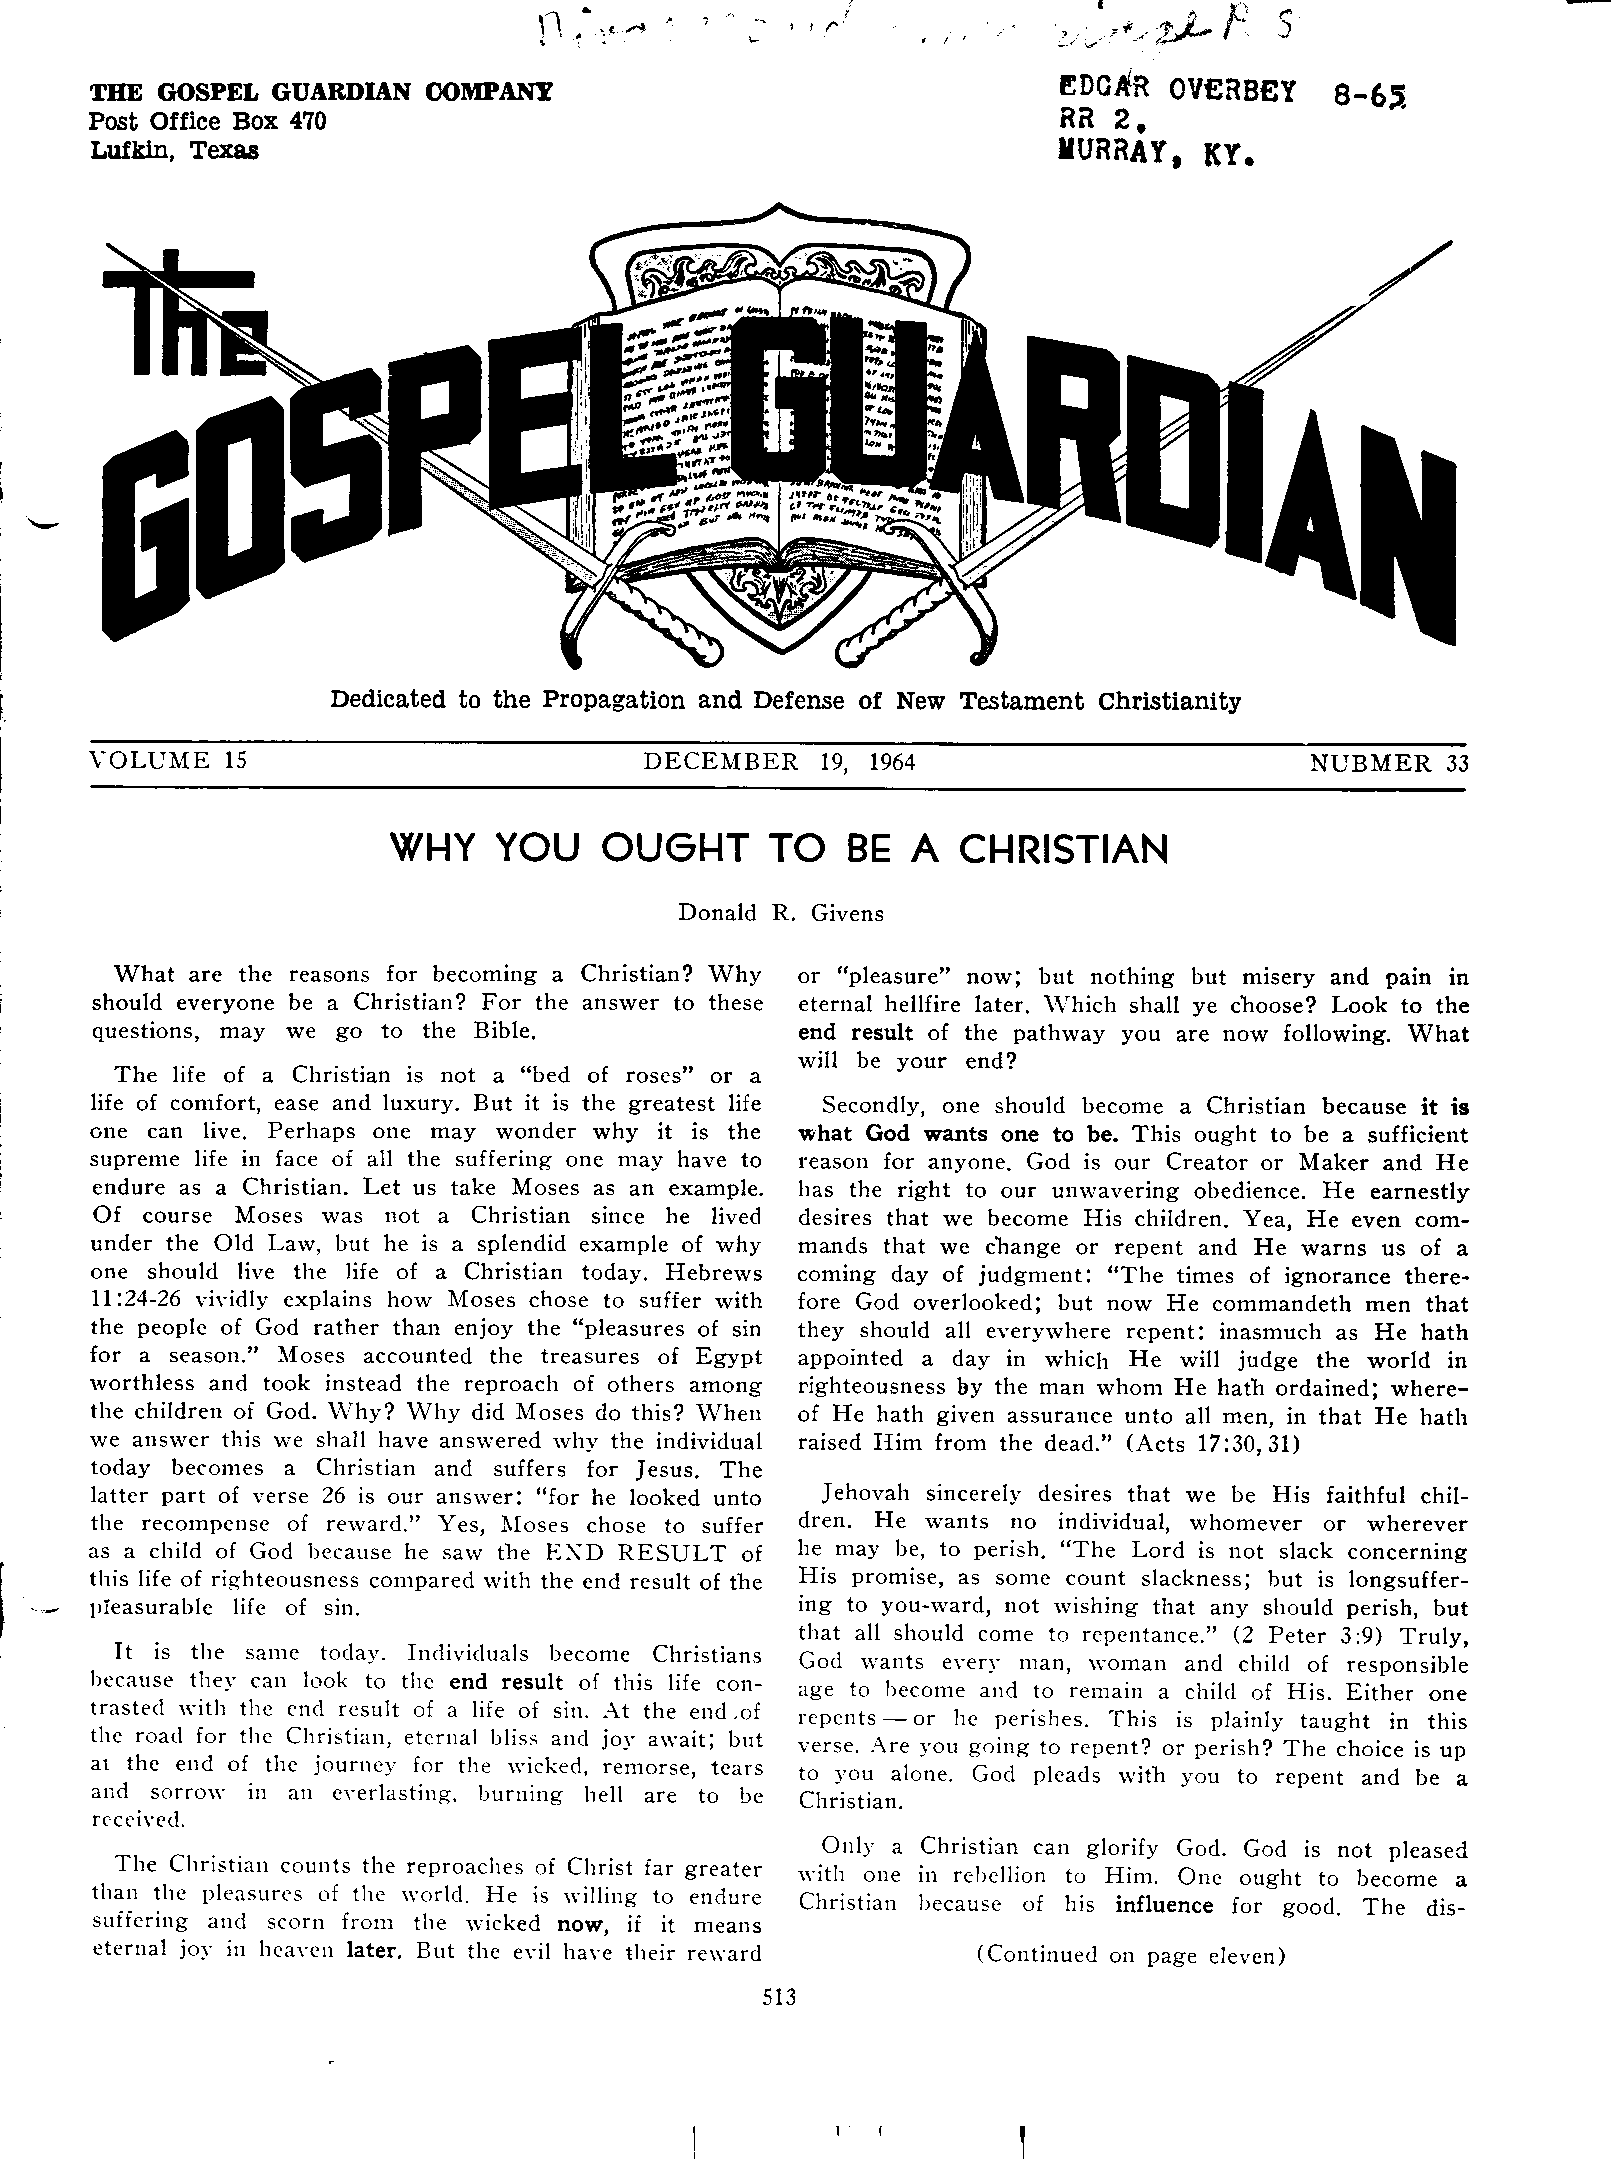 Gospel Guardian Original: Vol.16 No.33 Pg.1